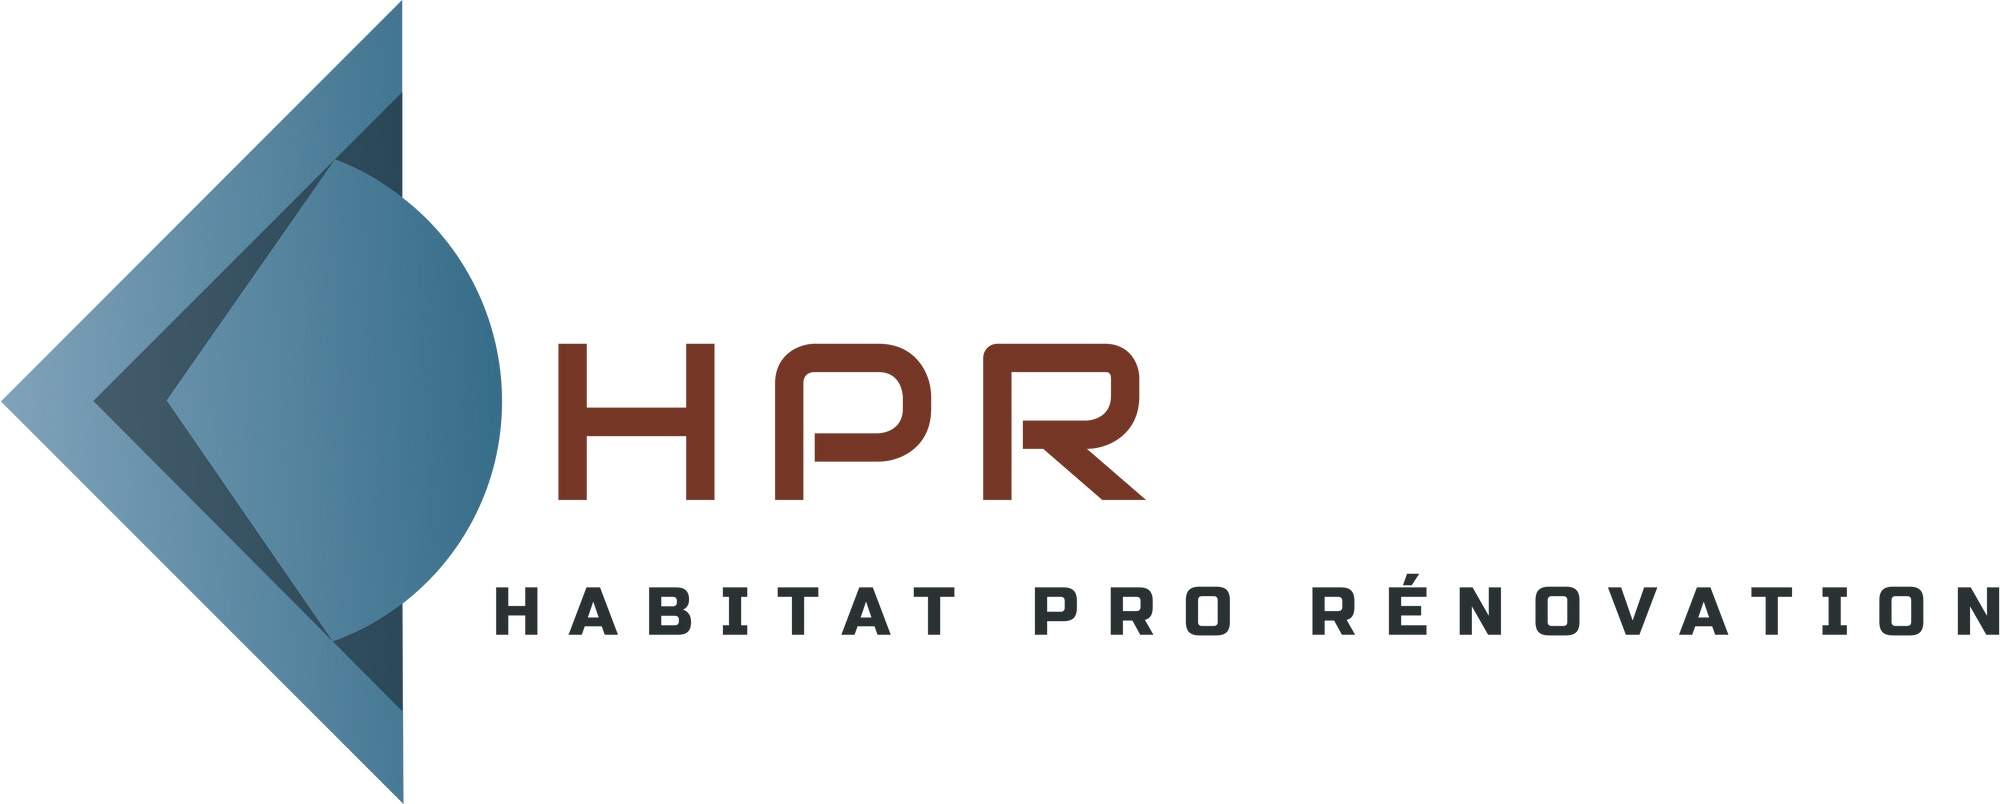 Logo Habitat pro renovation traitement anti-humidité et infiltration d'eau Eure 27